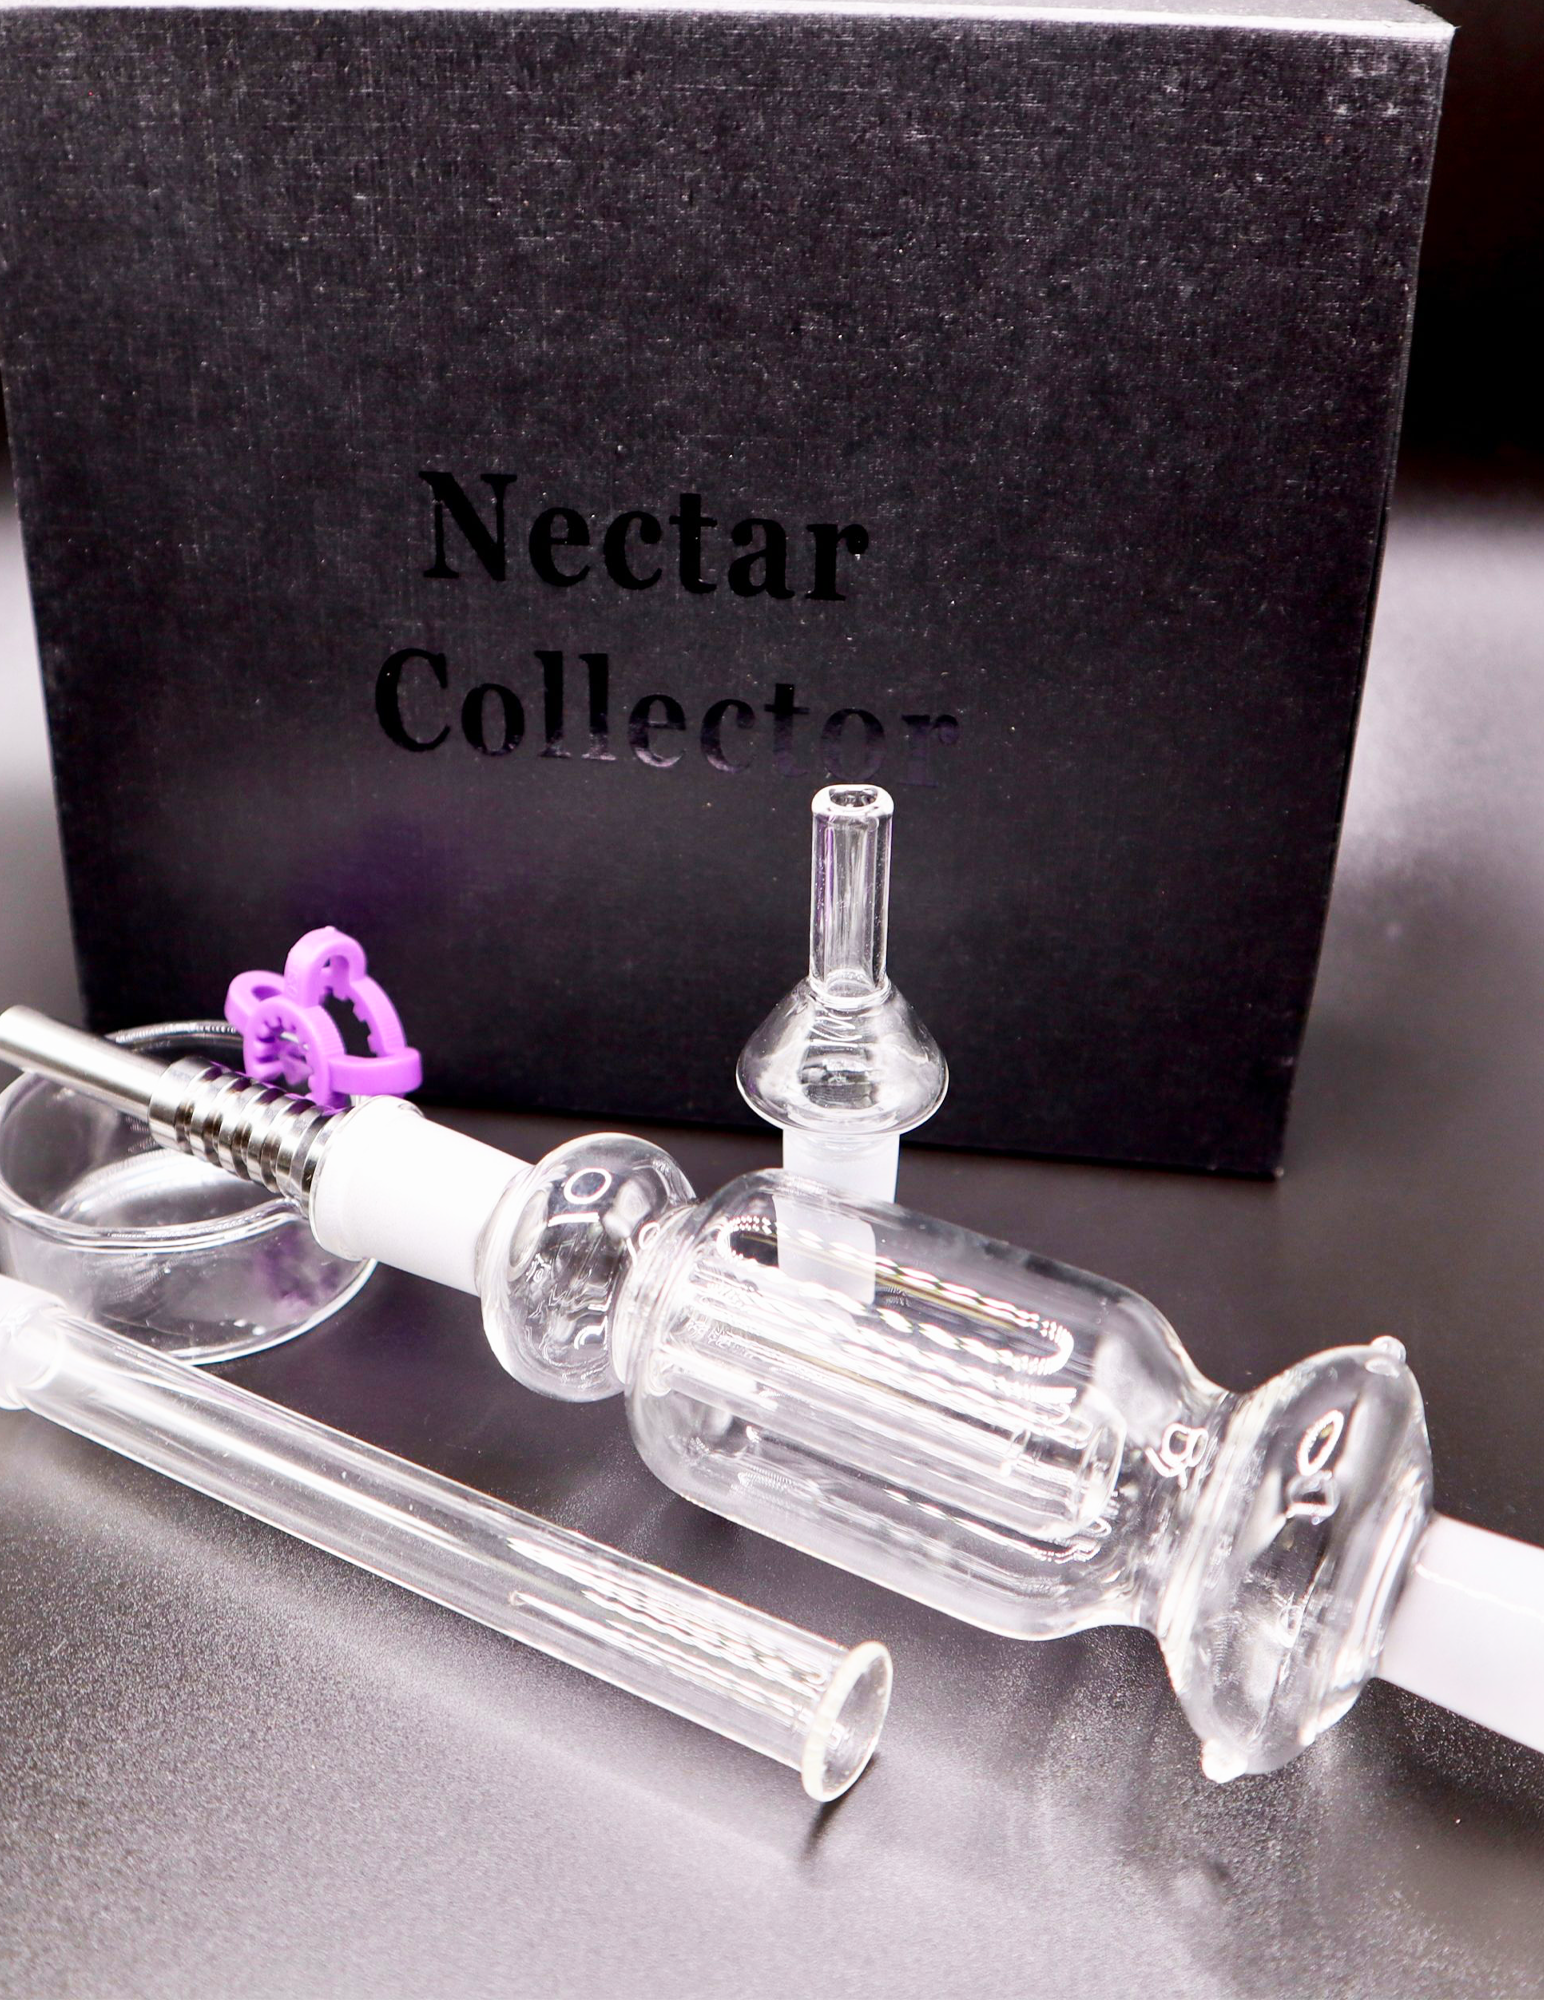 Nectar Collector IT v3.0 – Nectar Collector